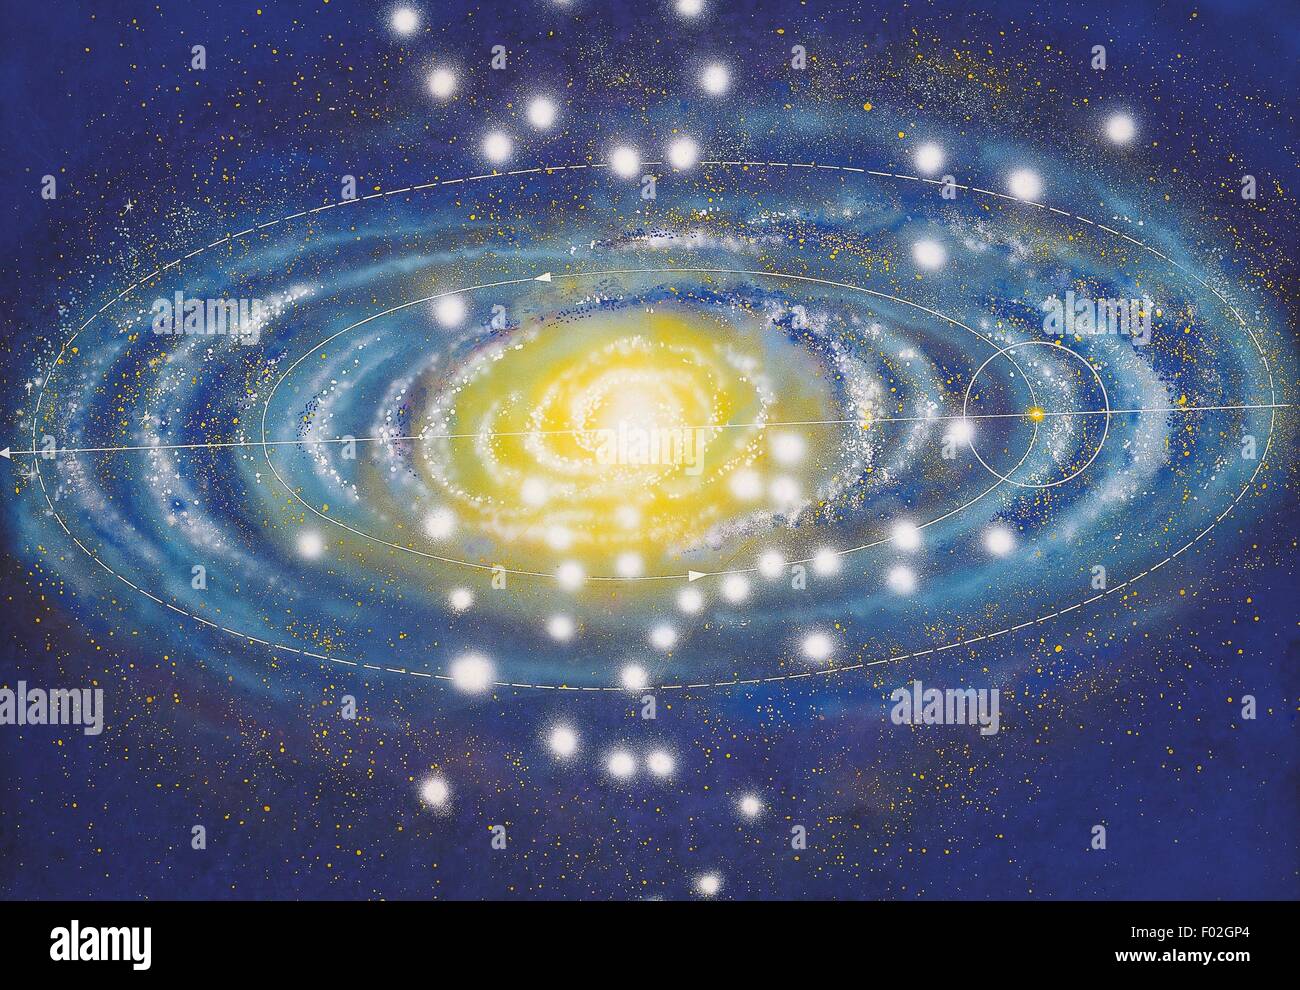 La galaxia de la Vía Láctea y la posición del Sistema Solar. Dibujo. Foto de stock